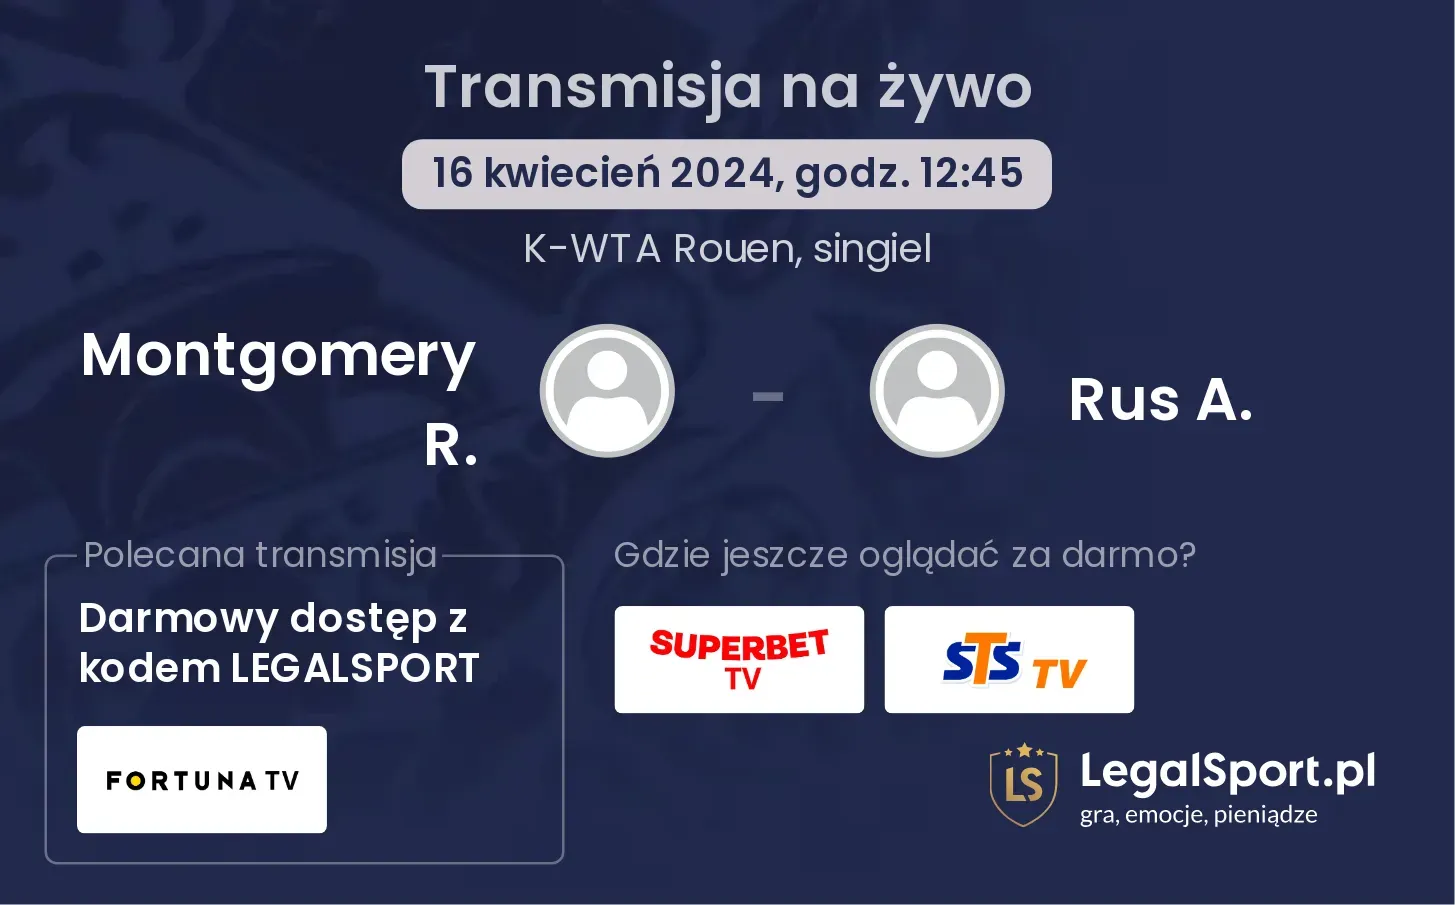 Montgomery R. - Rus A. transmisja na żywo